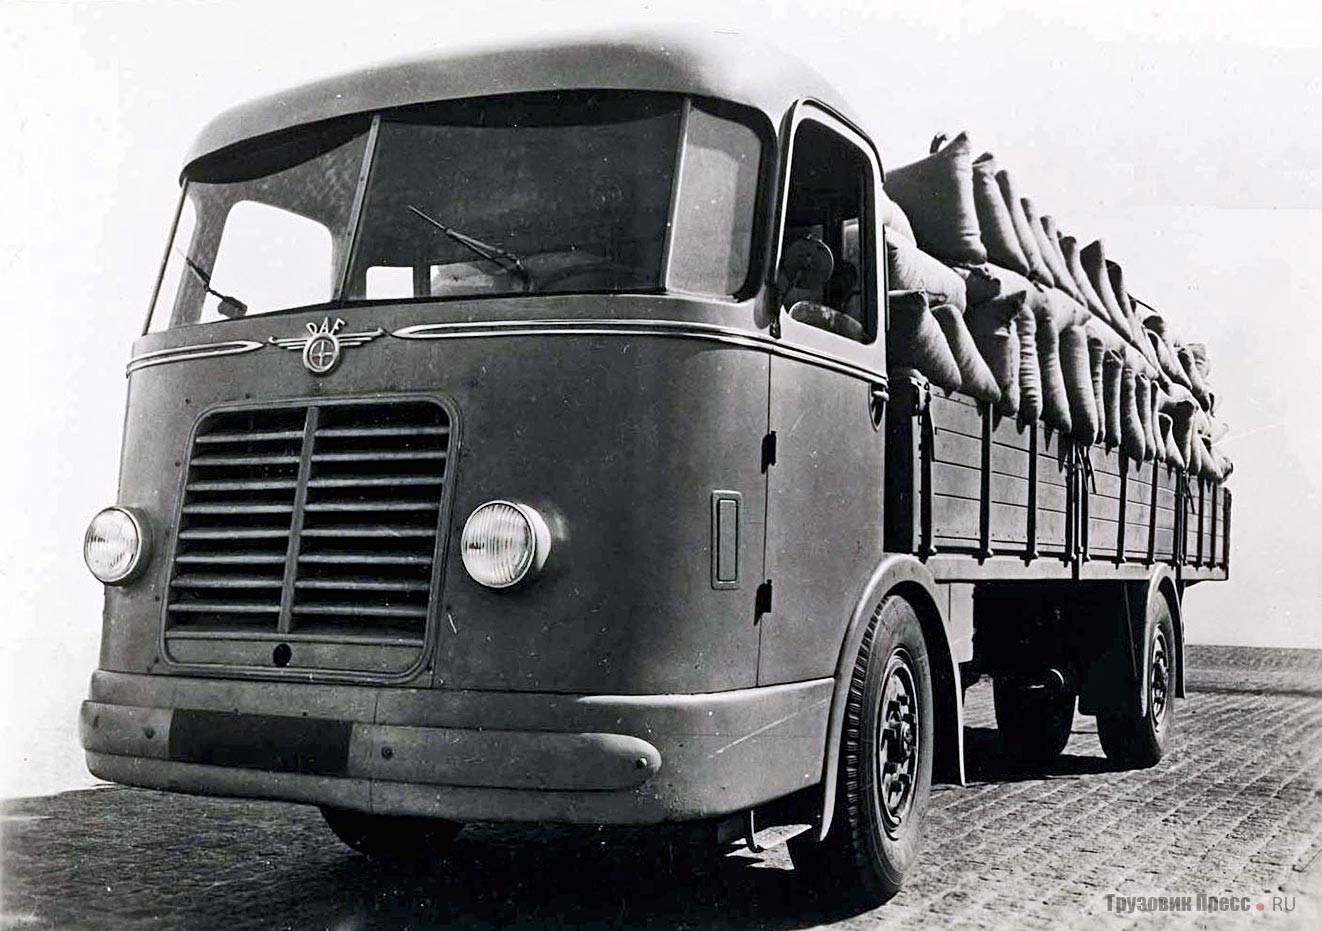 Прототип 10-тонного переднеприводного грузовика DAF DT10 с немецким дизелем воздушного охлаждения Deutz F4M517 мощностью 100 л.с. работал на заводе Metaal Compagnie Brabant. 1943 г.